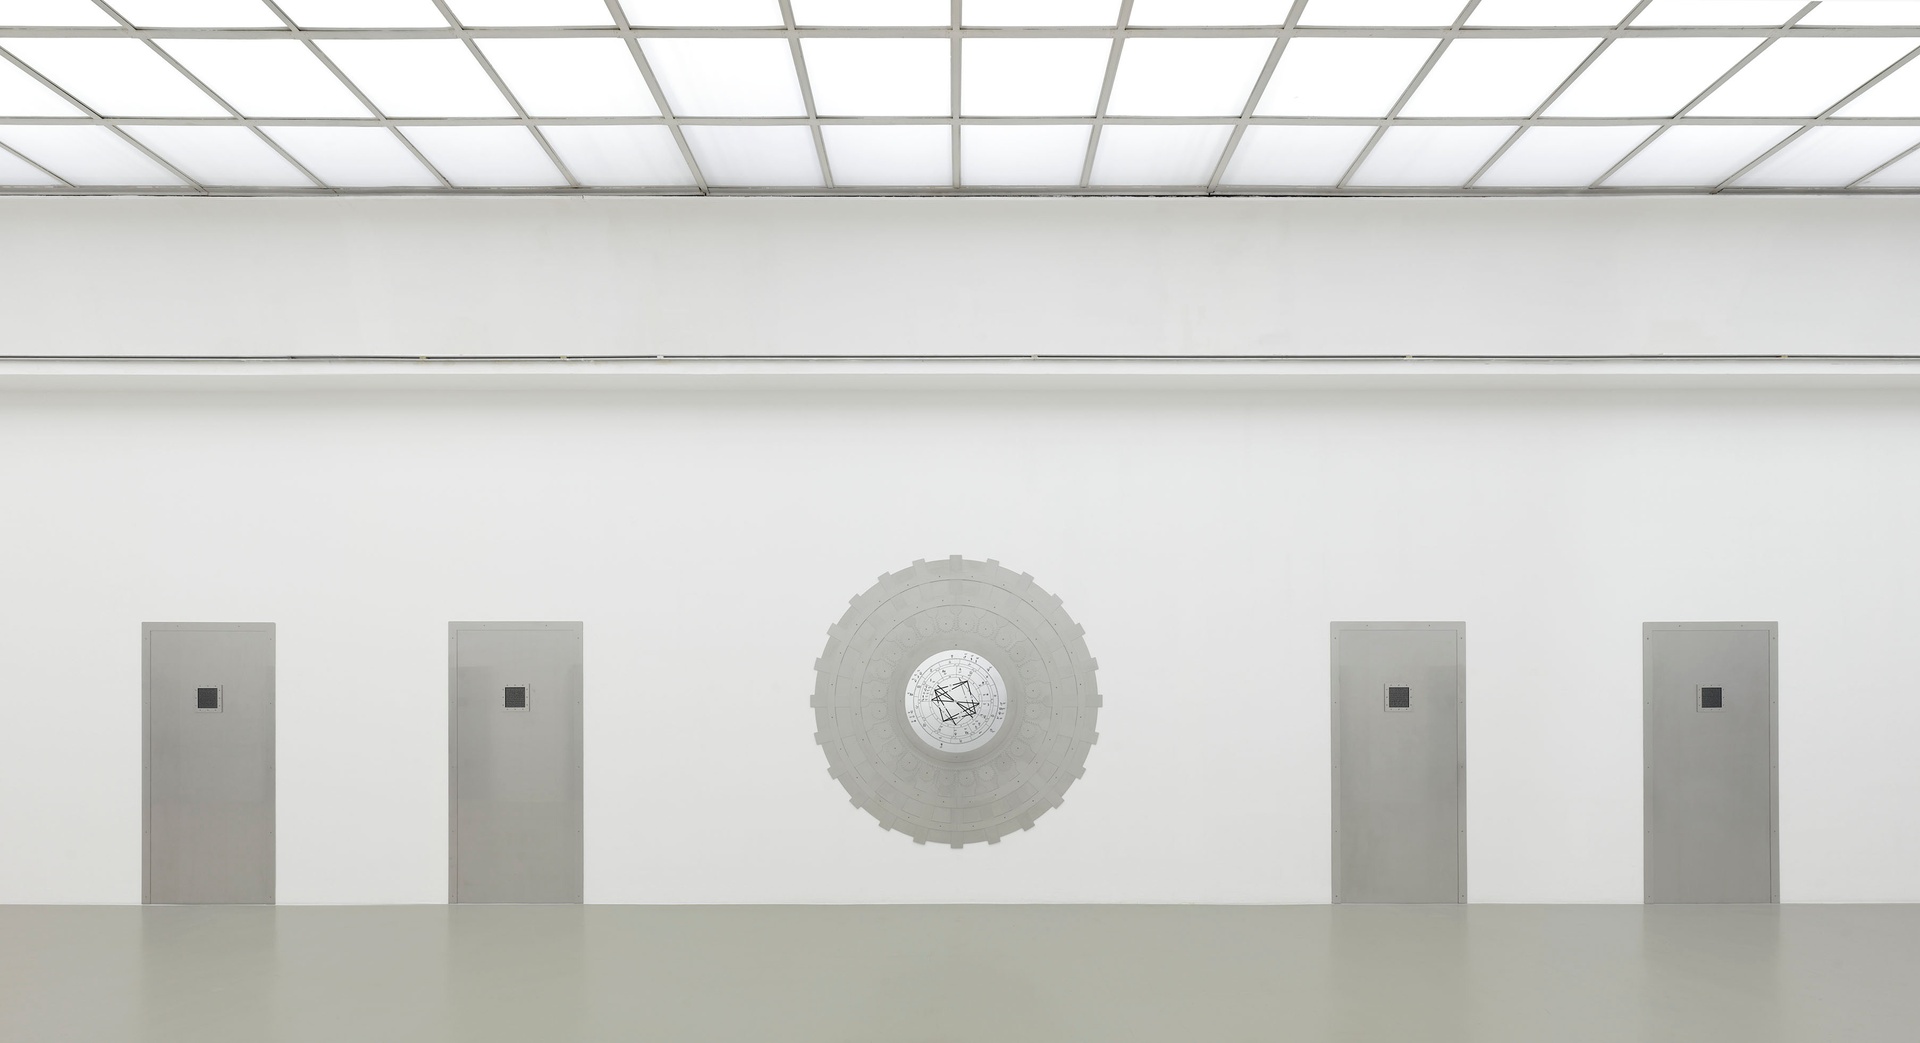 Installation view, ars viva - Preis für Bildende Kunst, Kunstverein Hannover, November 27, 2021 - January 16, 2022